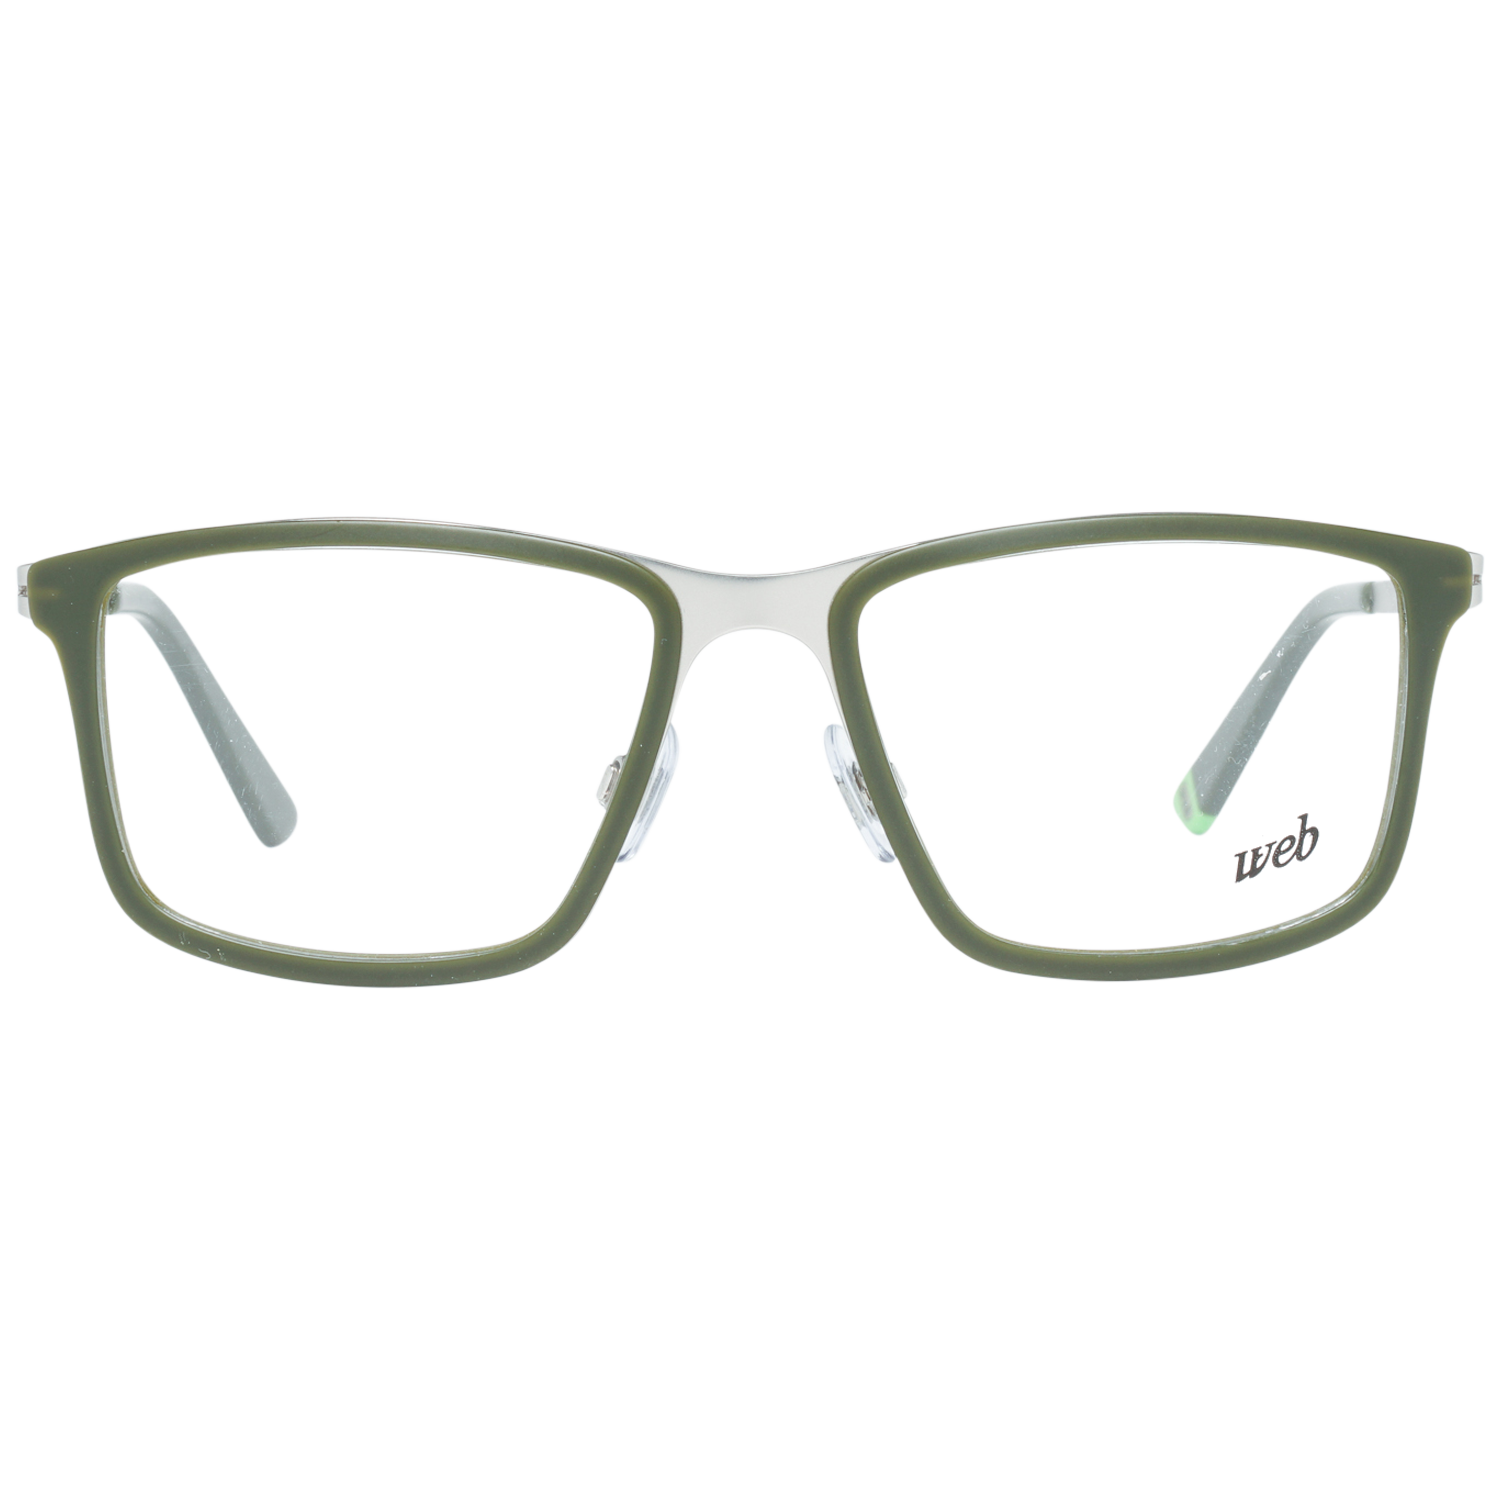 Web Frames Web Glasses Optical Frame WE5178 017 53 Eyeglasses Eyewear UK USA Australia 